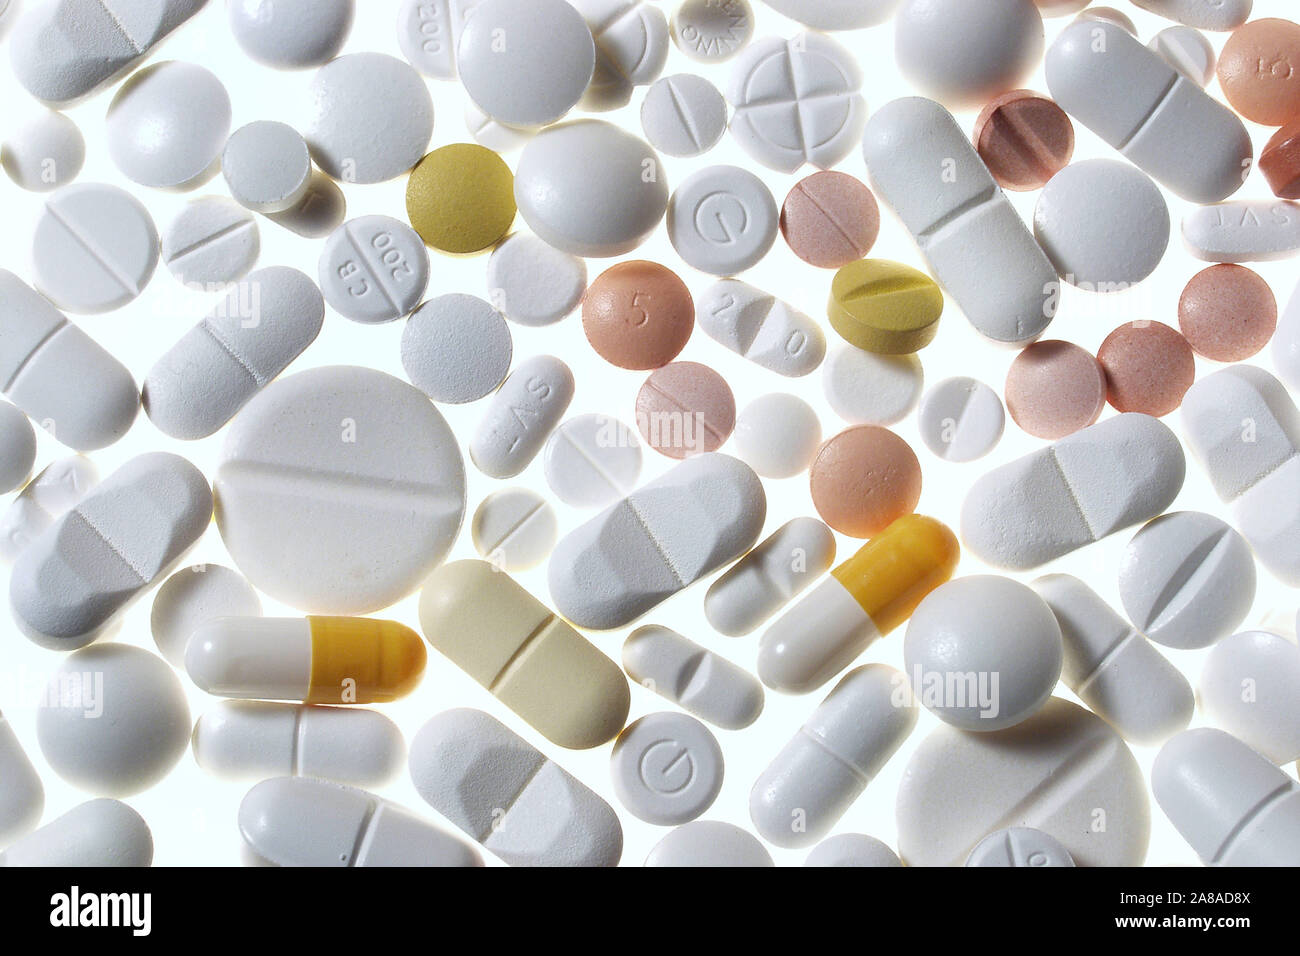 Verschiedene Tabletten, Schmerztabletten, Tablettensucht, Foto Stock